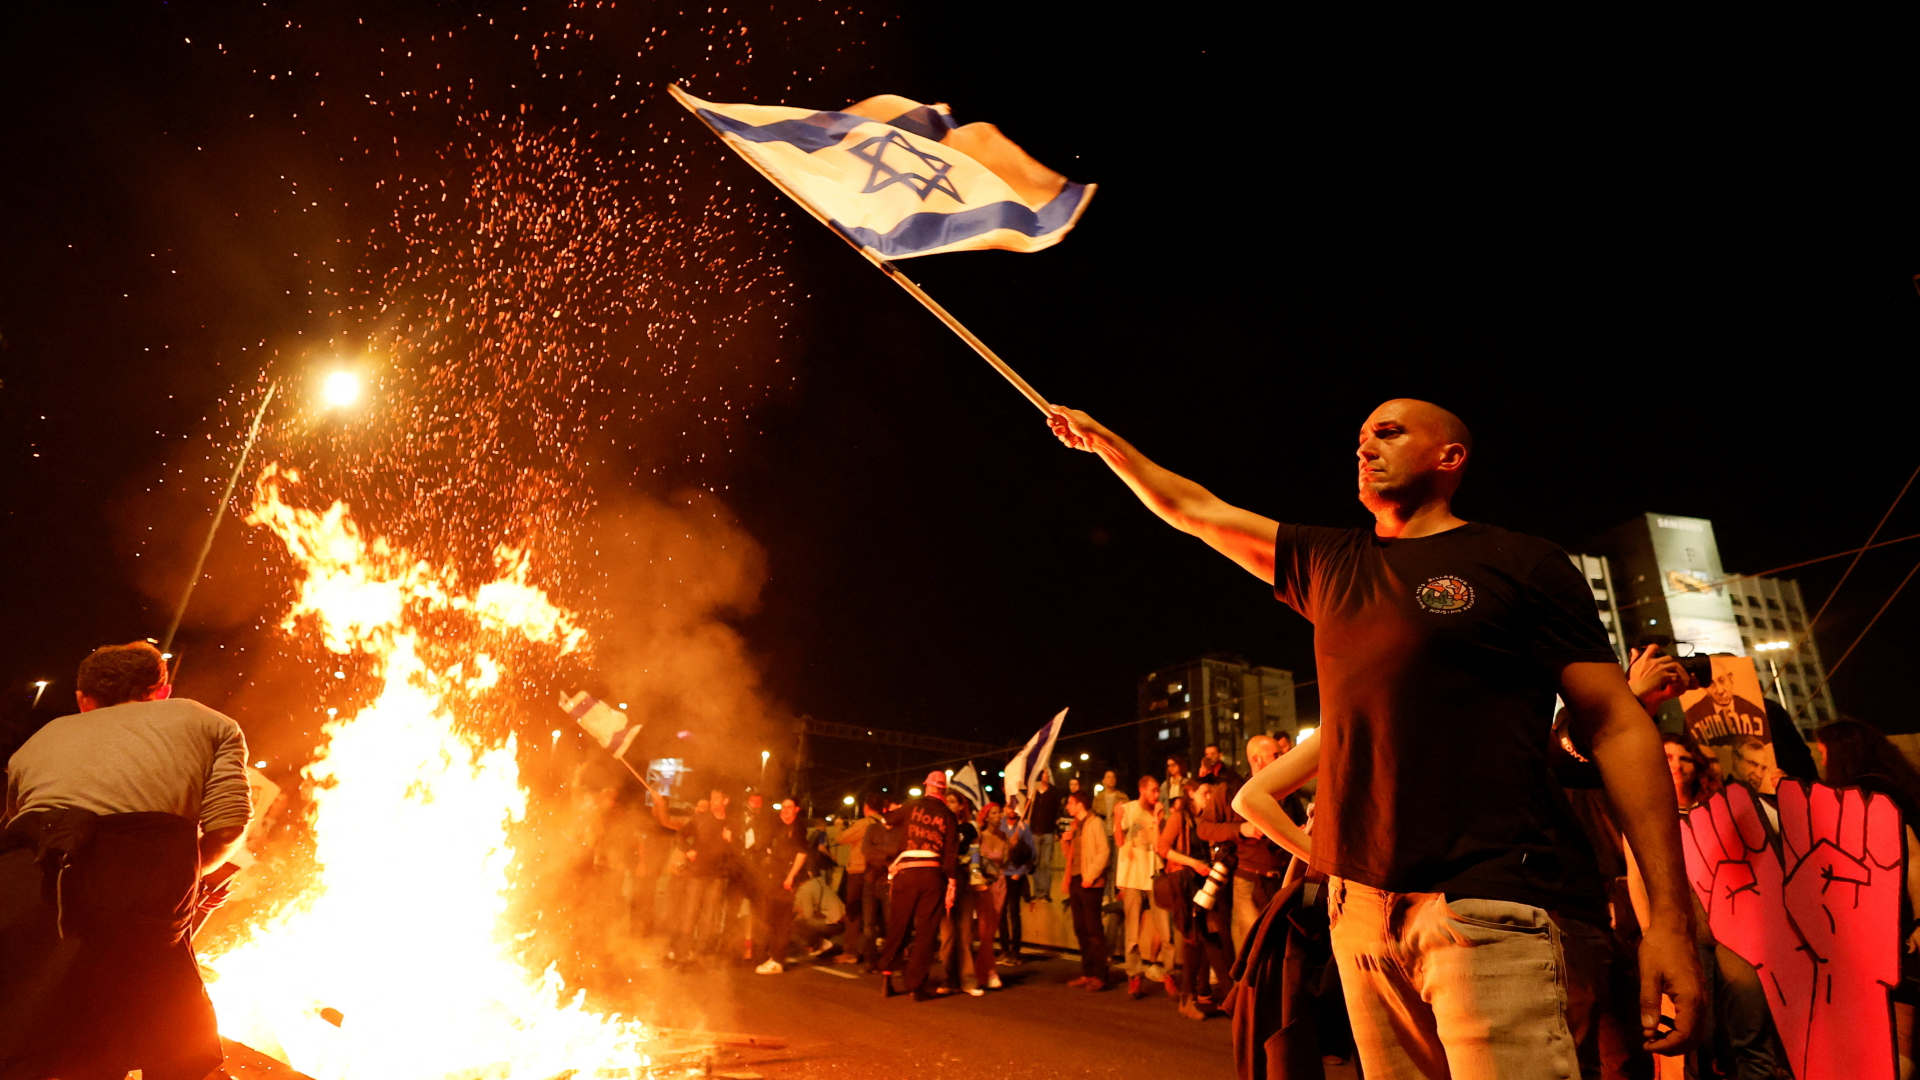 Ein Demonstrant in Tel Aviv schwenkt eine israelische Fahne, neben ihm brennt ein Feuer auf einer Straße | REUTERS